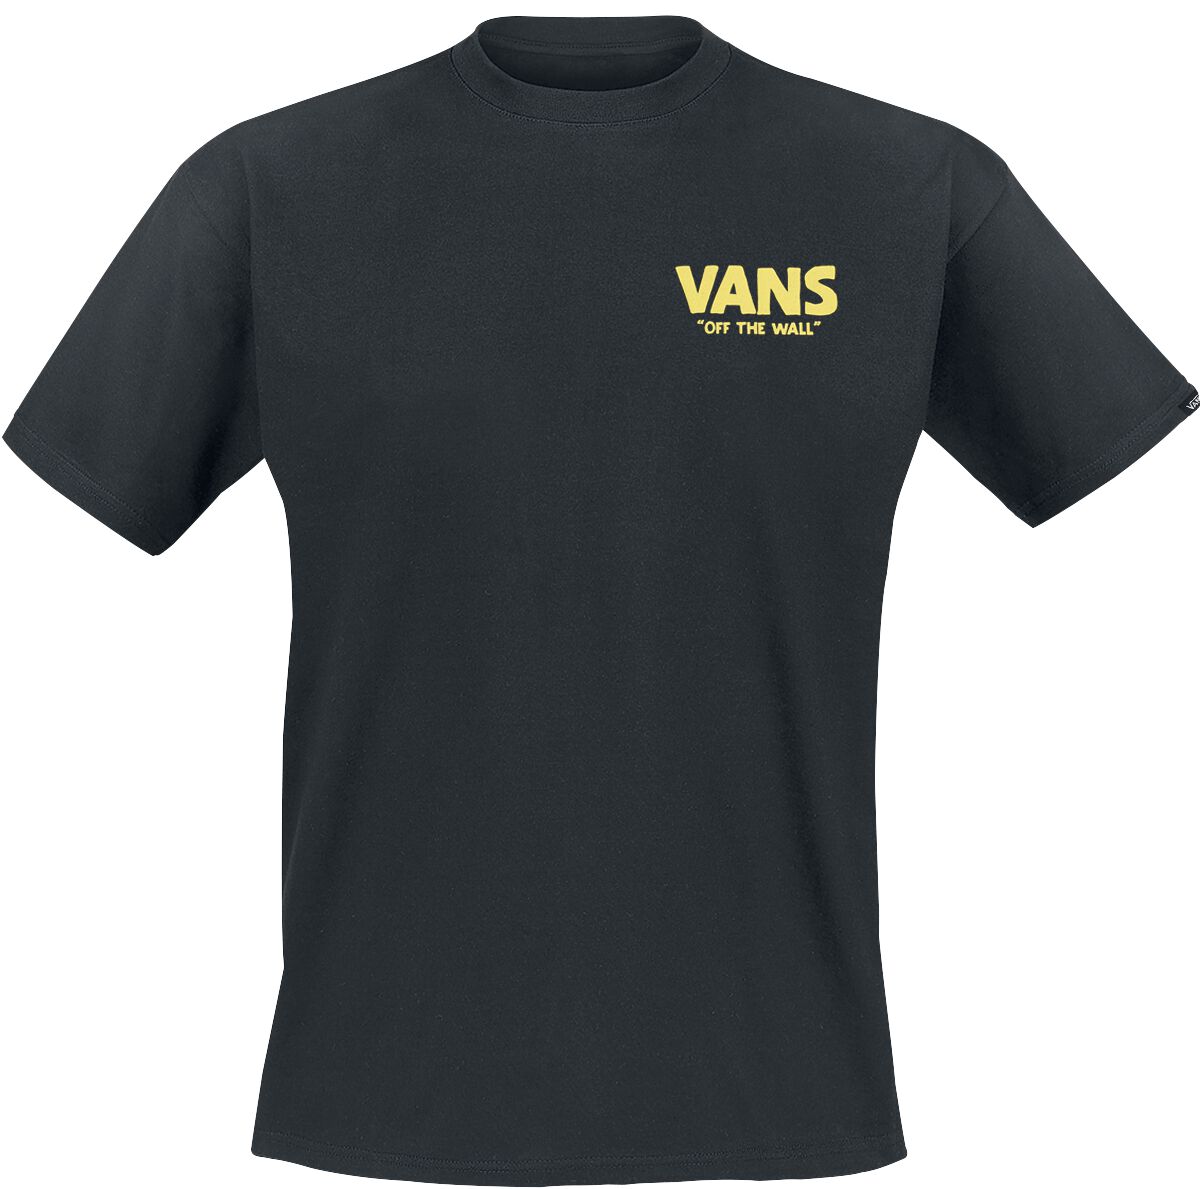 Vans Stay Cool Tee T-Shirt schwarz in S